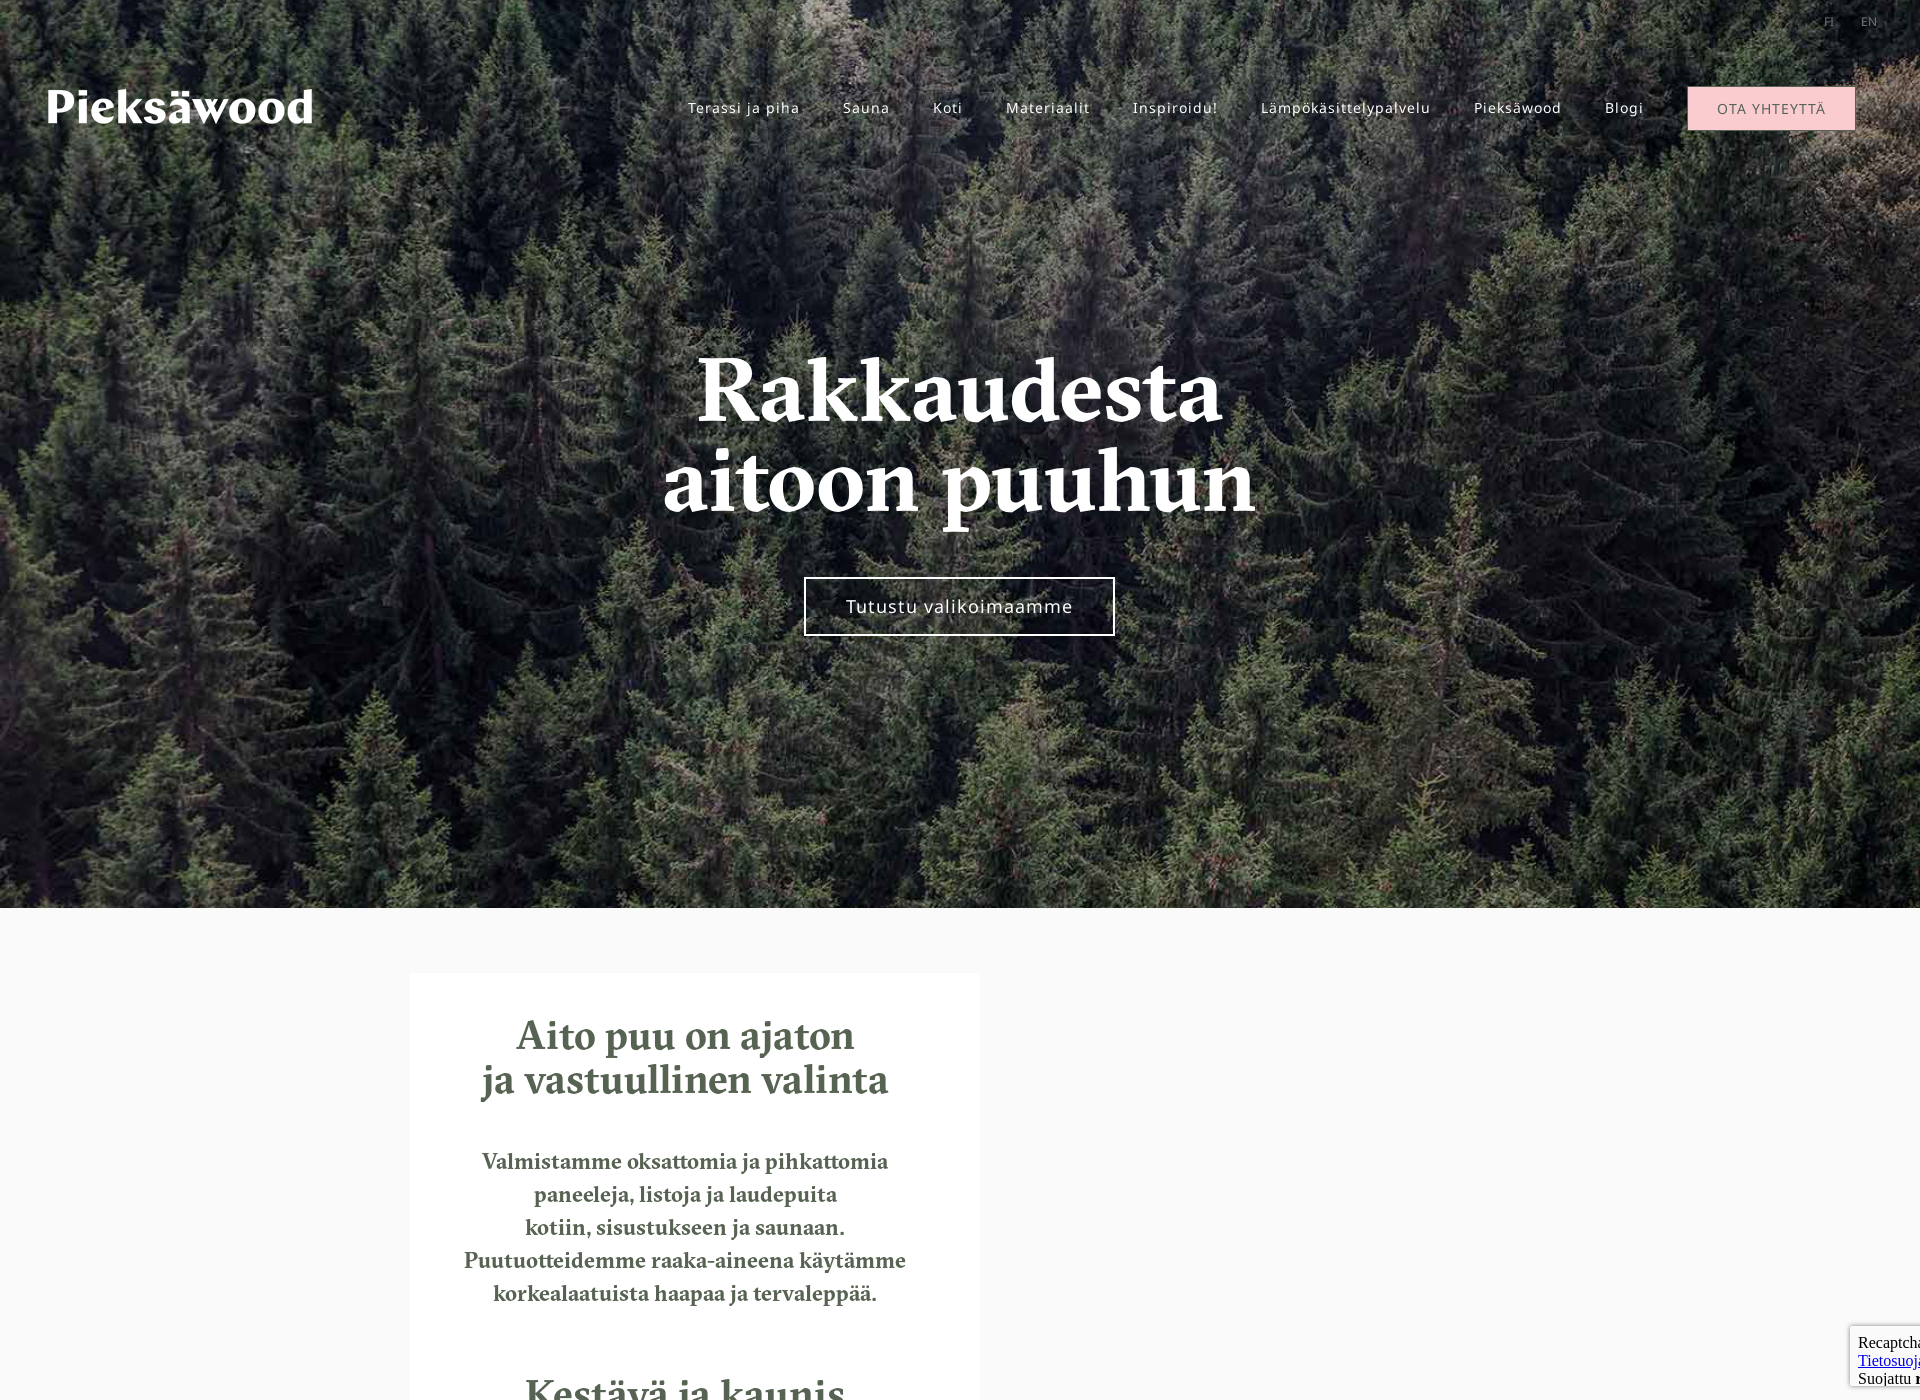 Näyttökuva pieksawood.fi